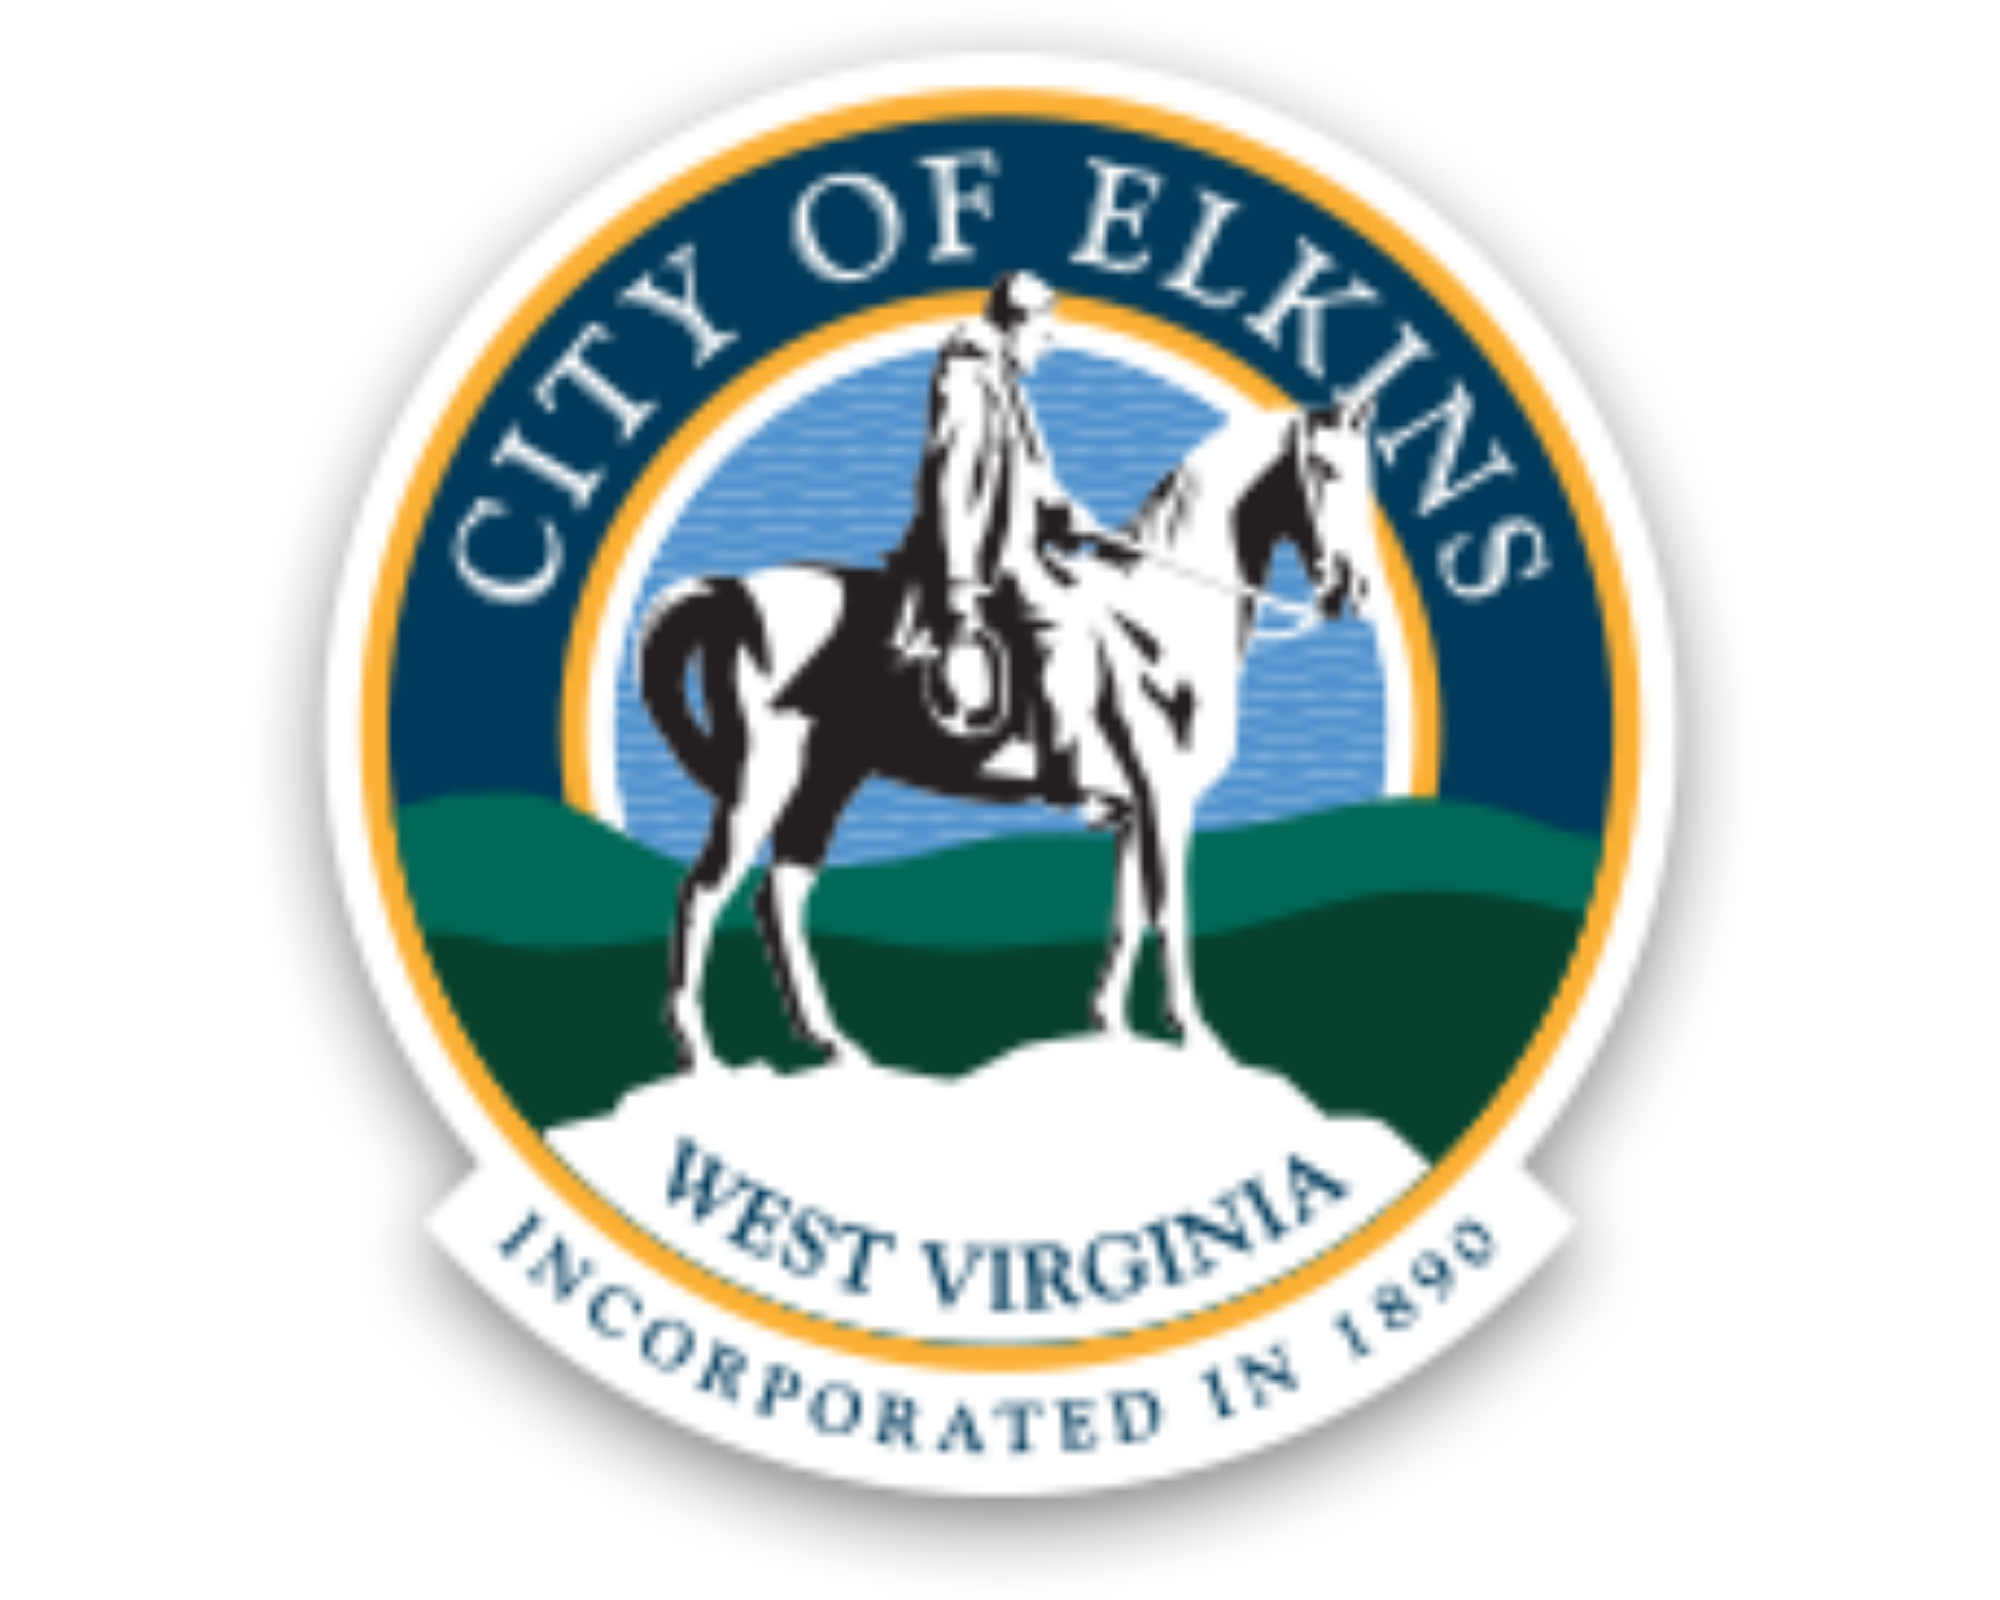 city of elkins logo.png